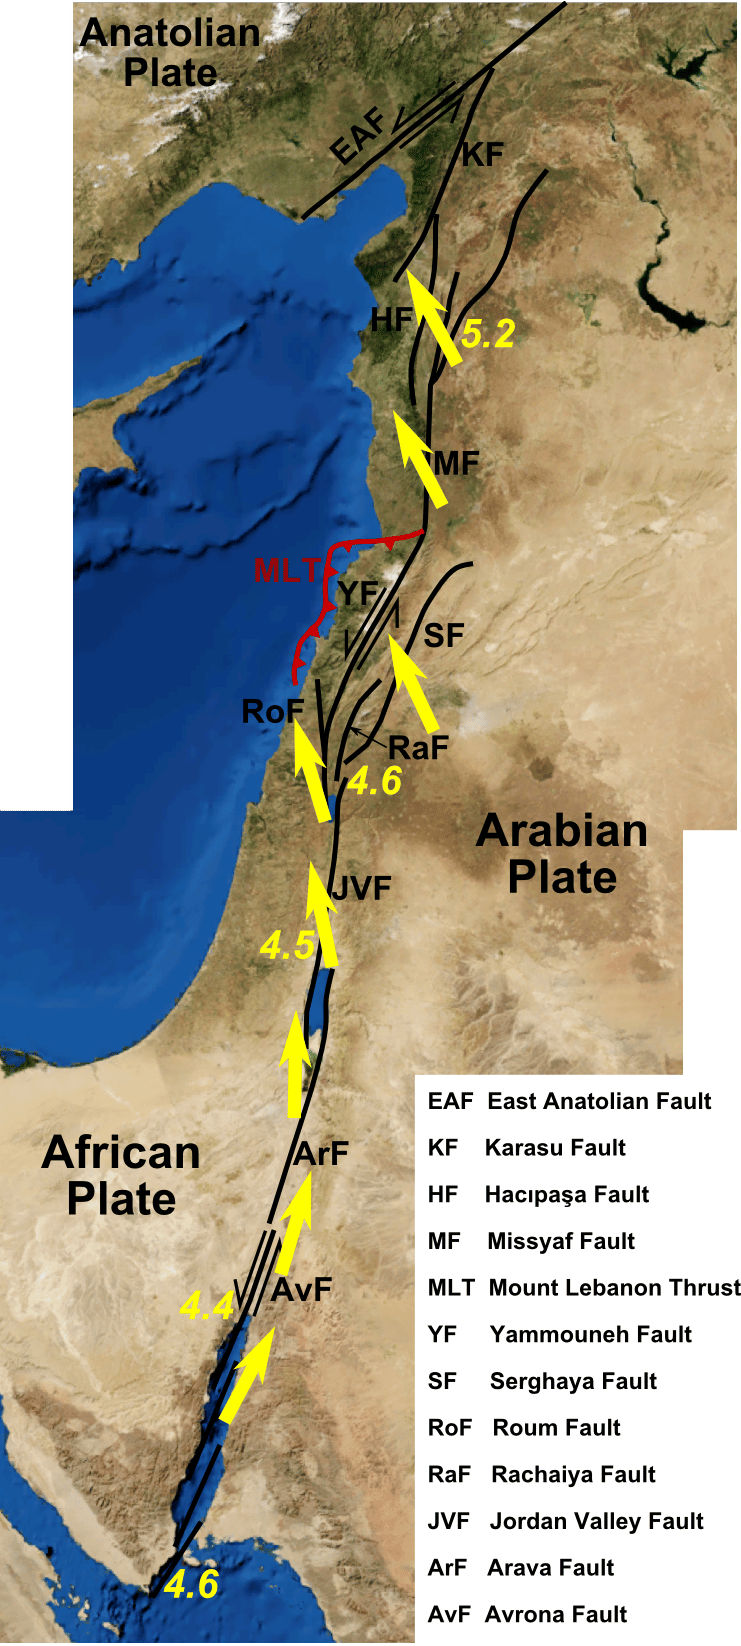 La connexion entre la faille du Levant (qui s'étire du nord au sud) et la faille est-anatolienne s'opère dans la province d'Hatay, qui connaît actuellement de nombreuses répliques sismiques. © Mikenorton, Wikimedia Commons, CC BY-SA 3.0